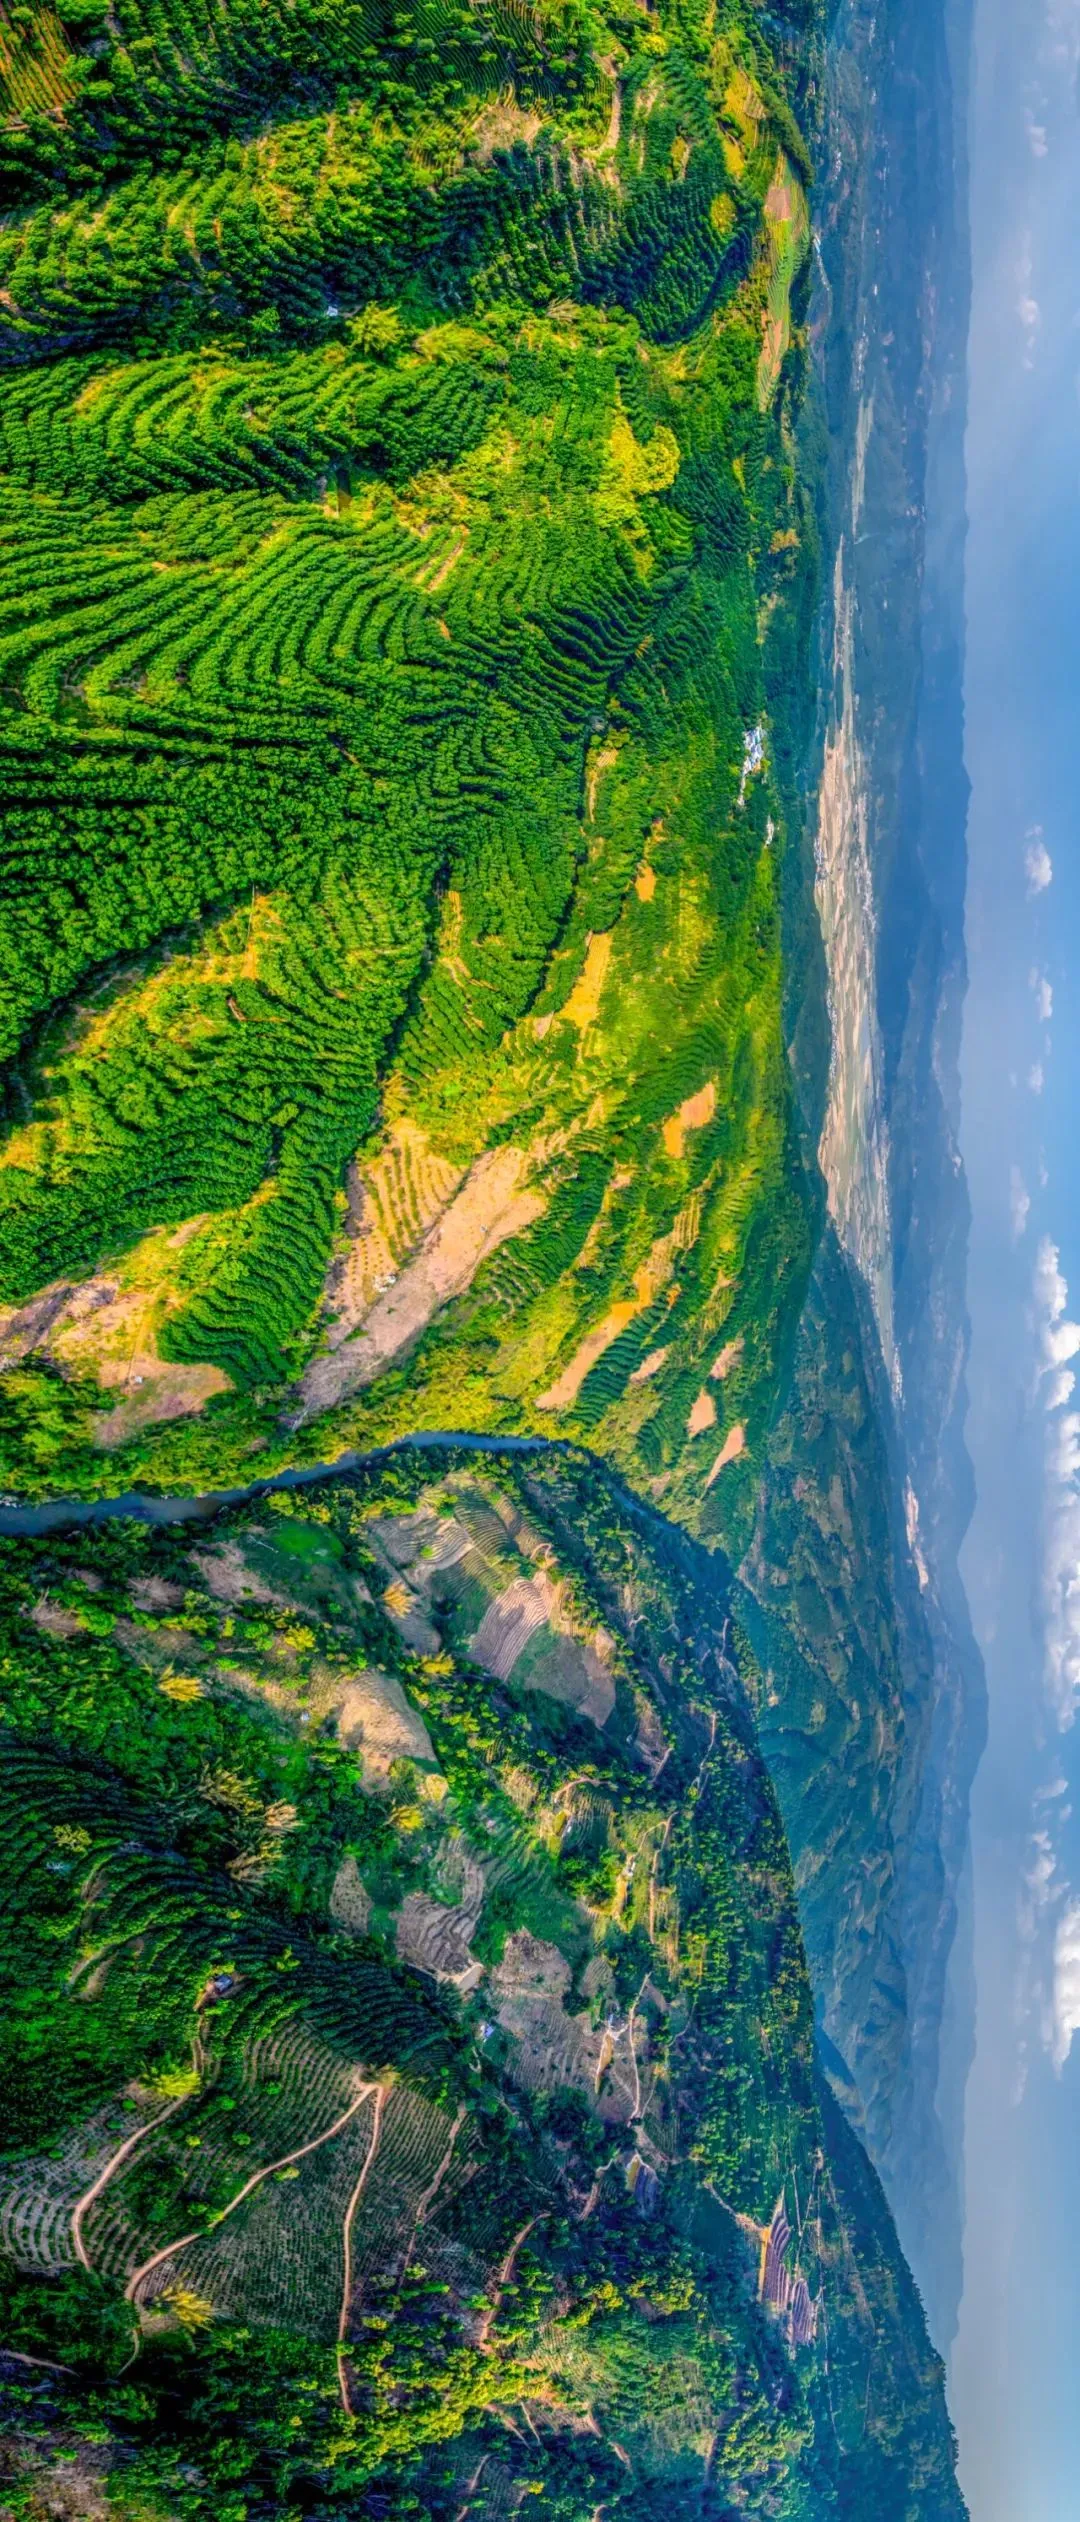 景迈山拥有世界上保存最好、年代最久远、面积最大的人工栽培古茶园 图/视觉中国